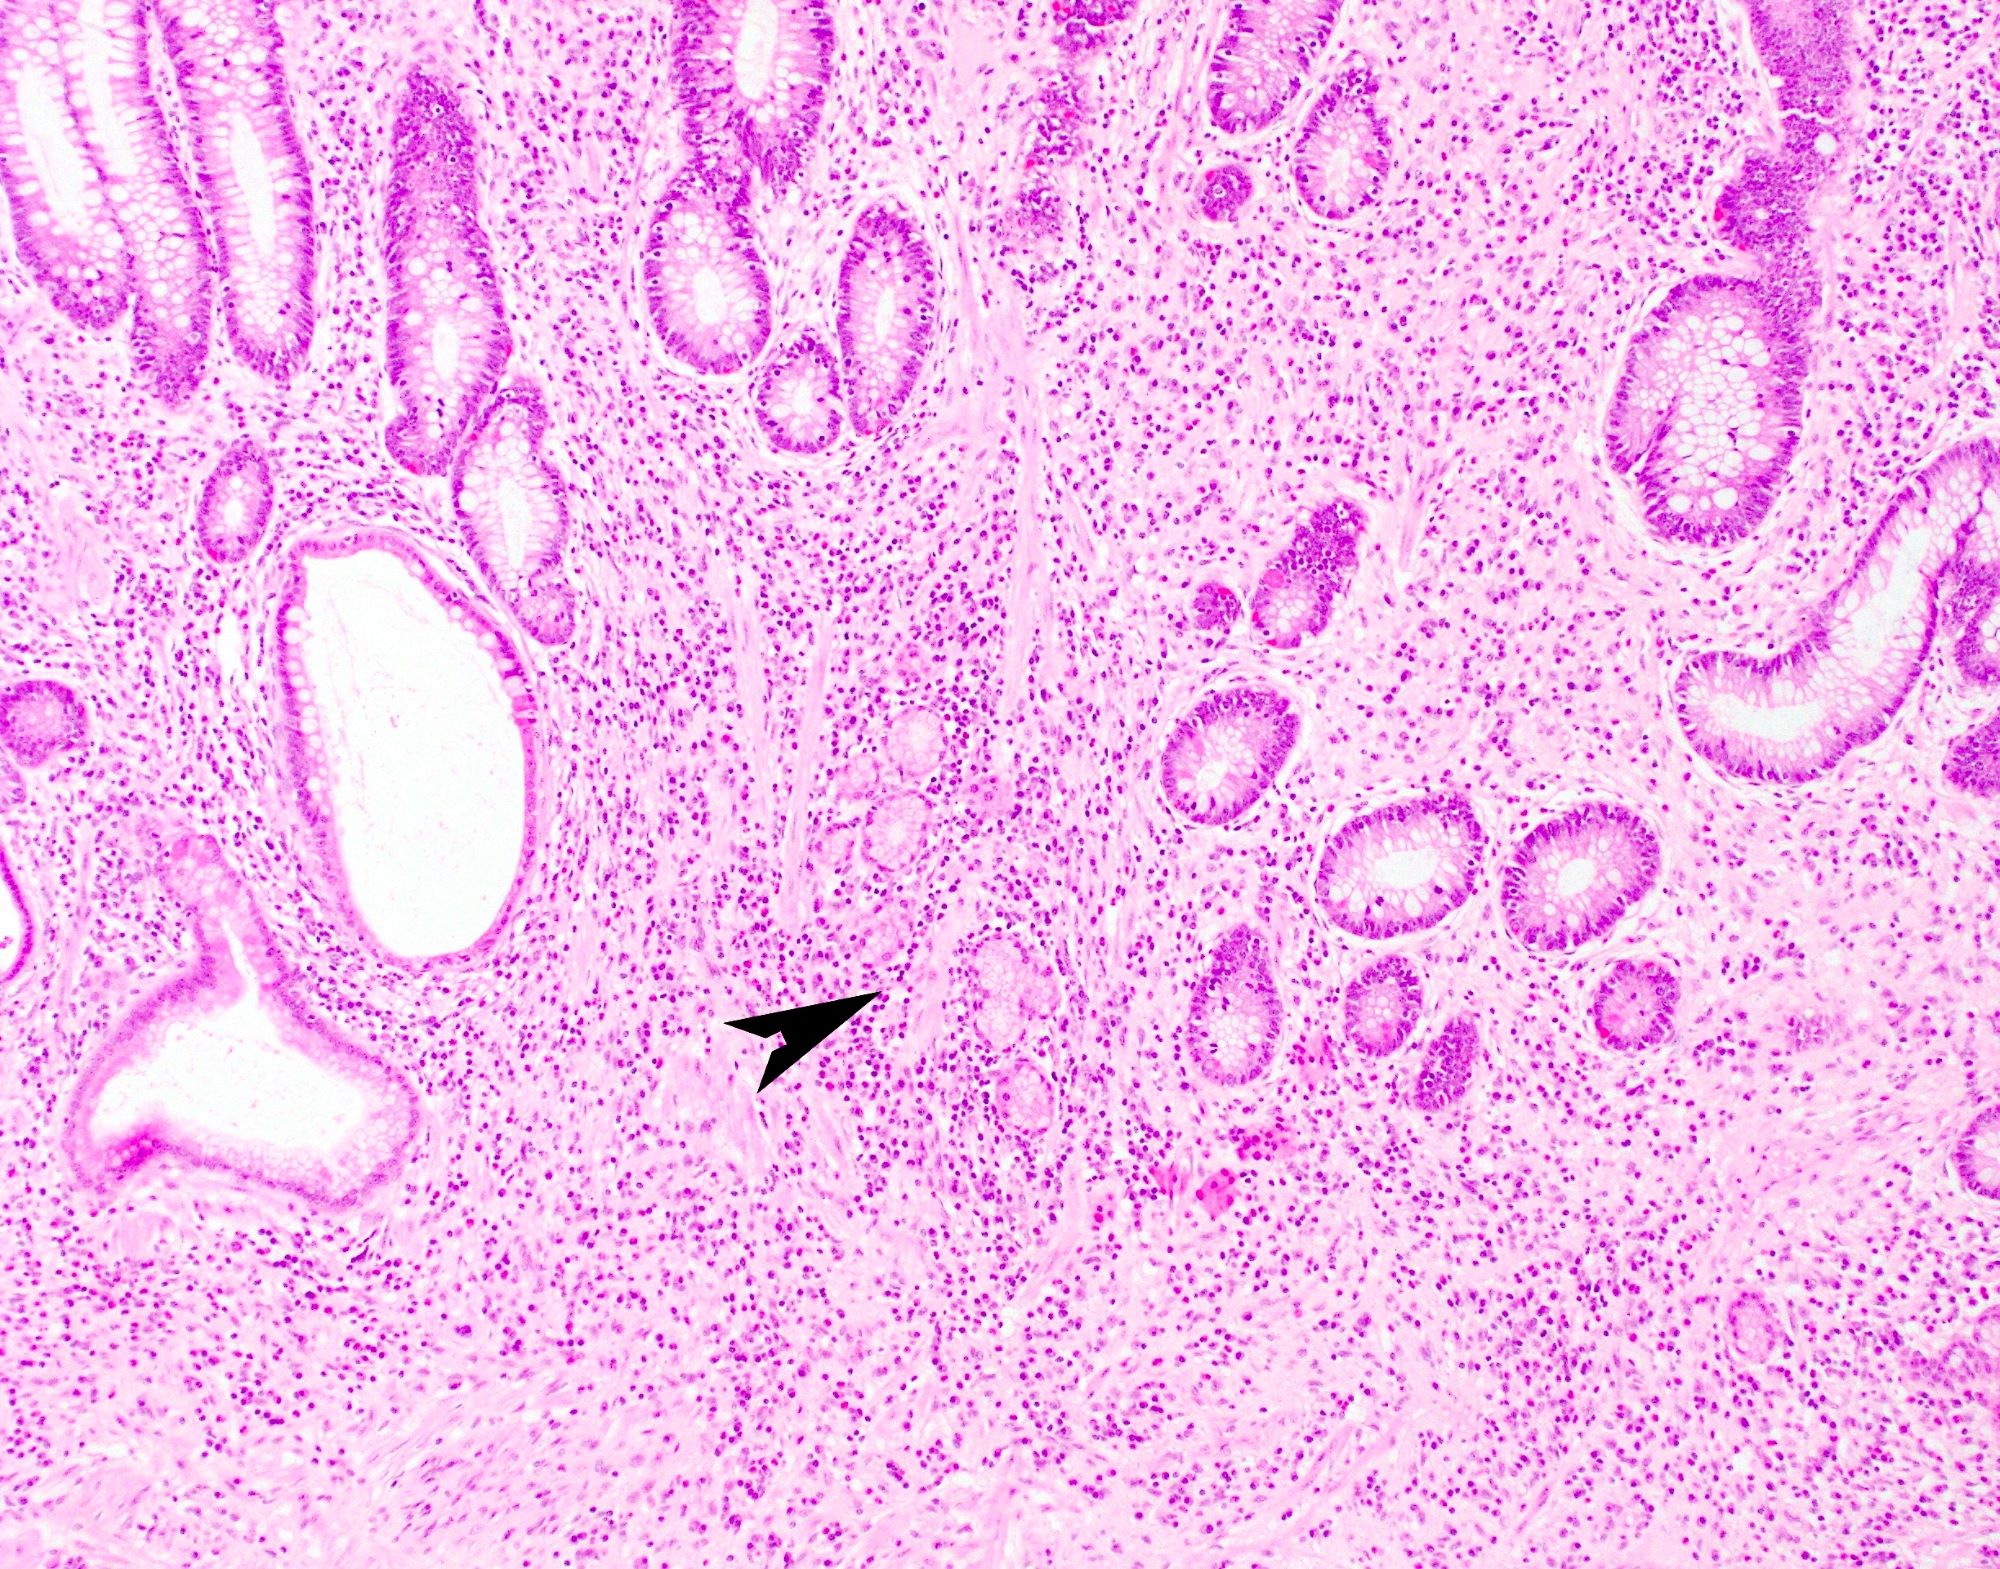 Pyloric gland metaplasia